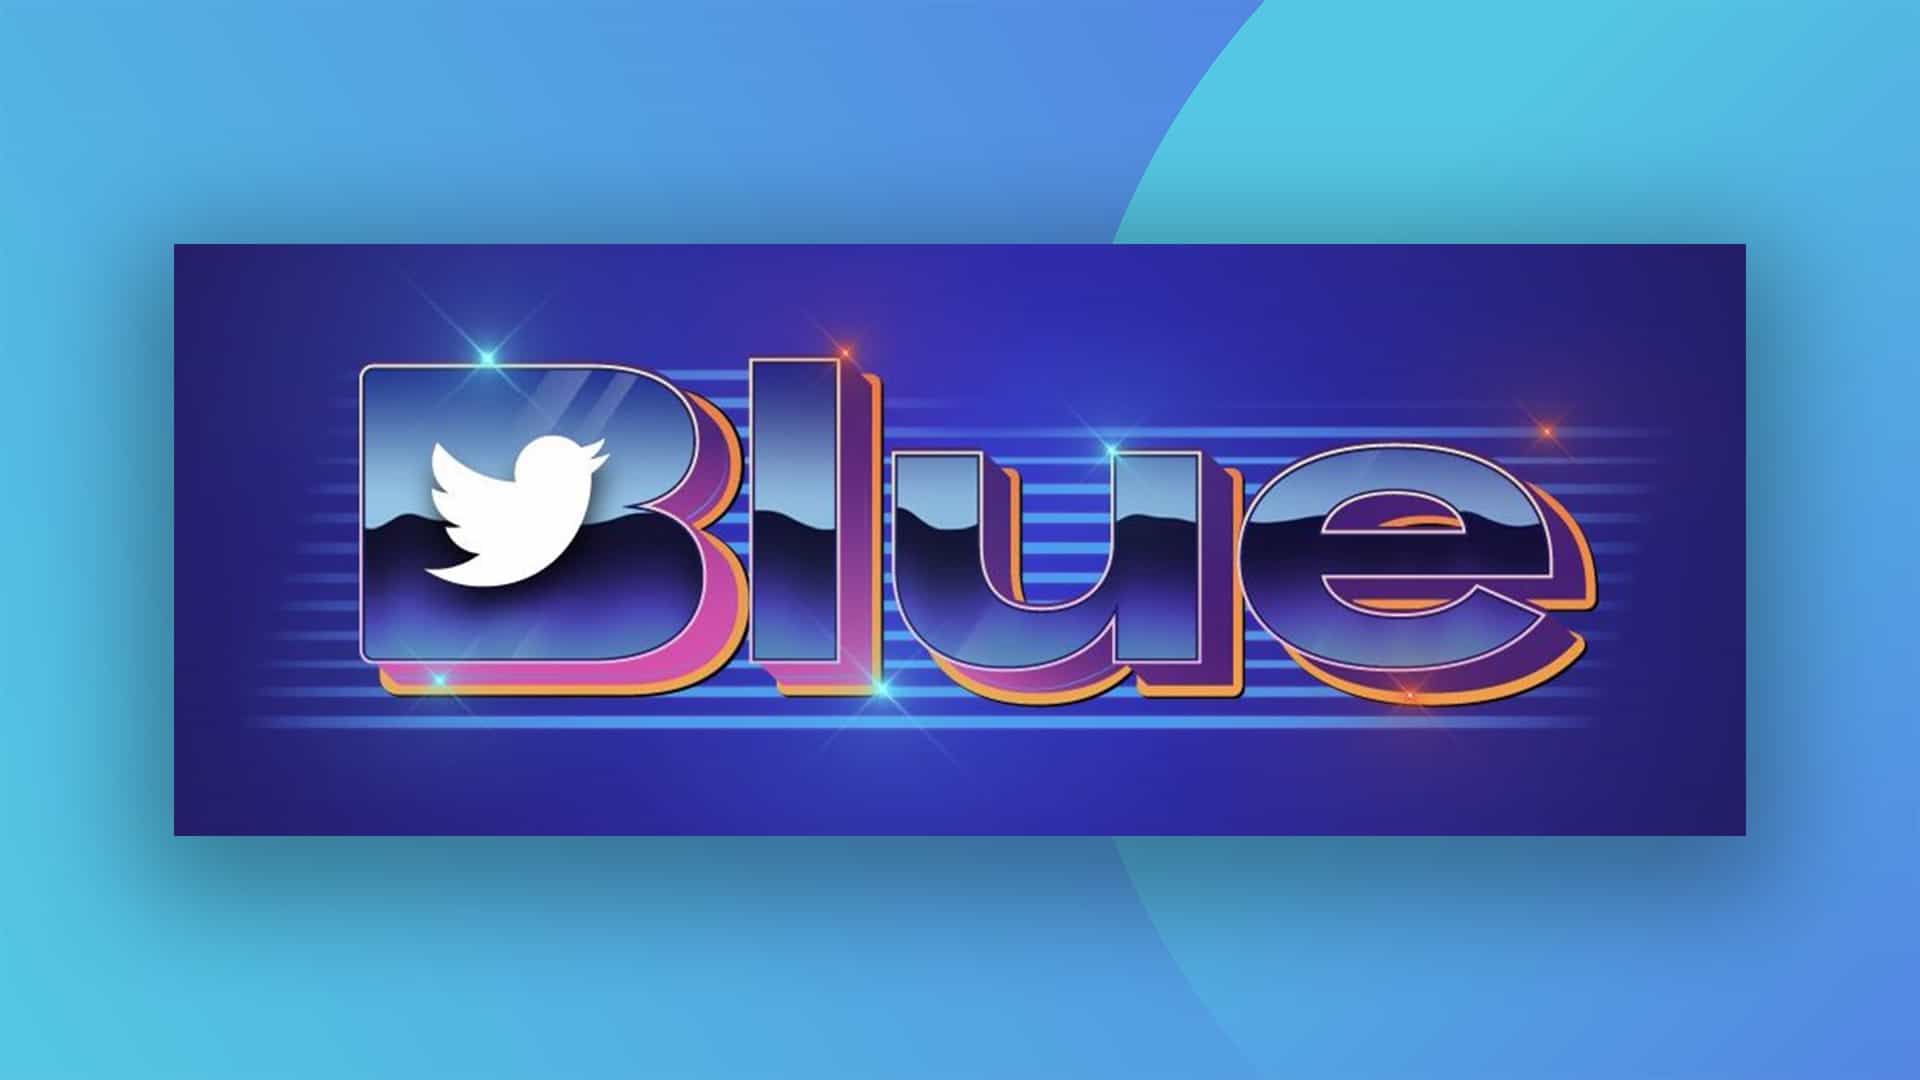 He aquí, el nuevo y terrible logotipo de Twitter Blue